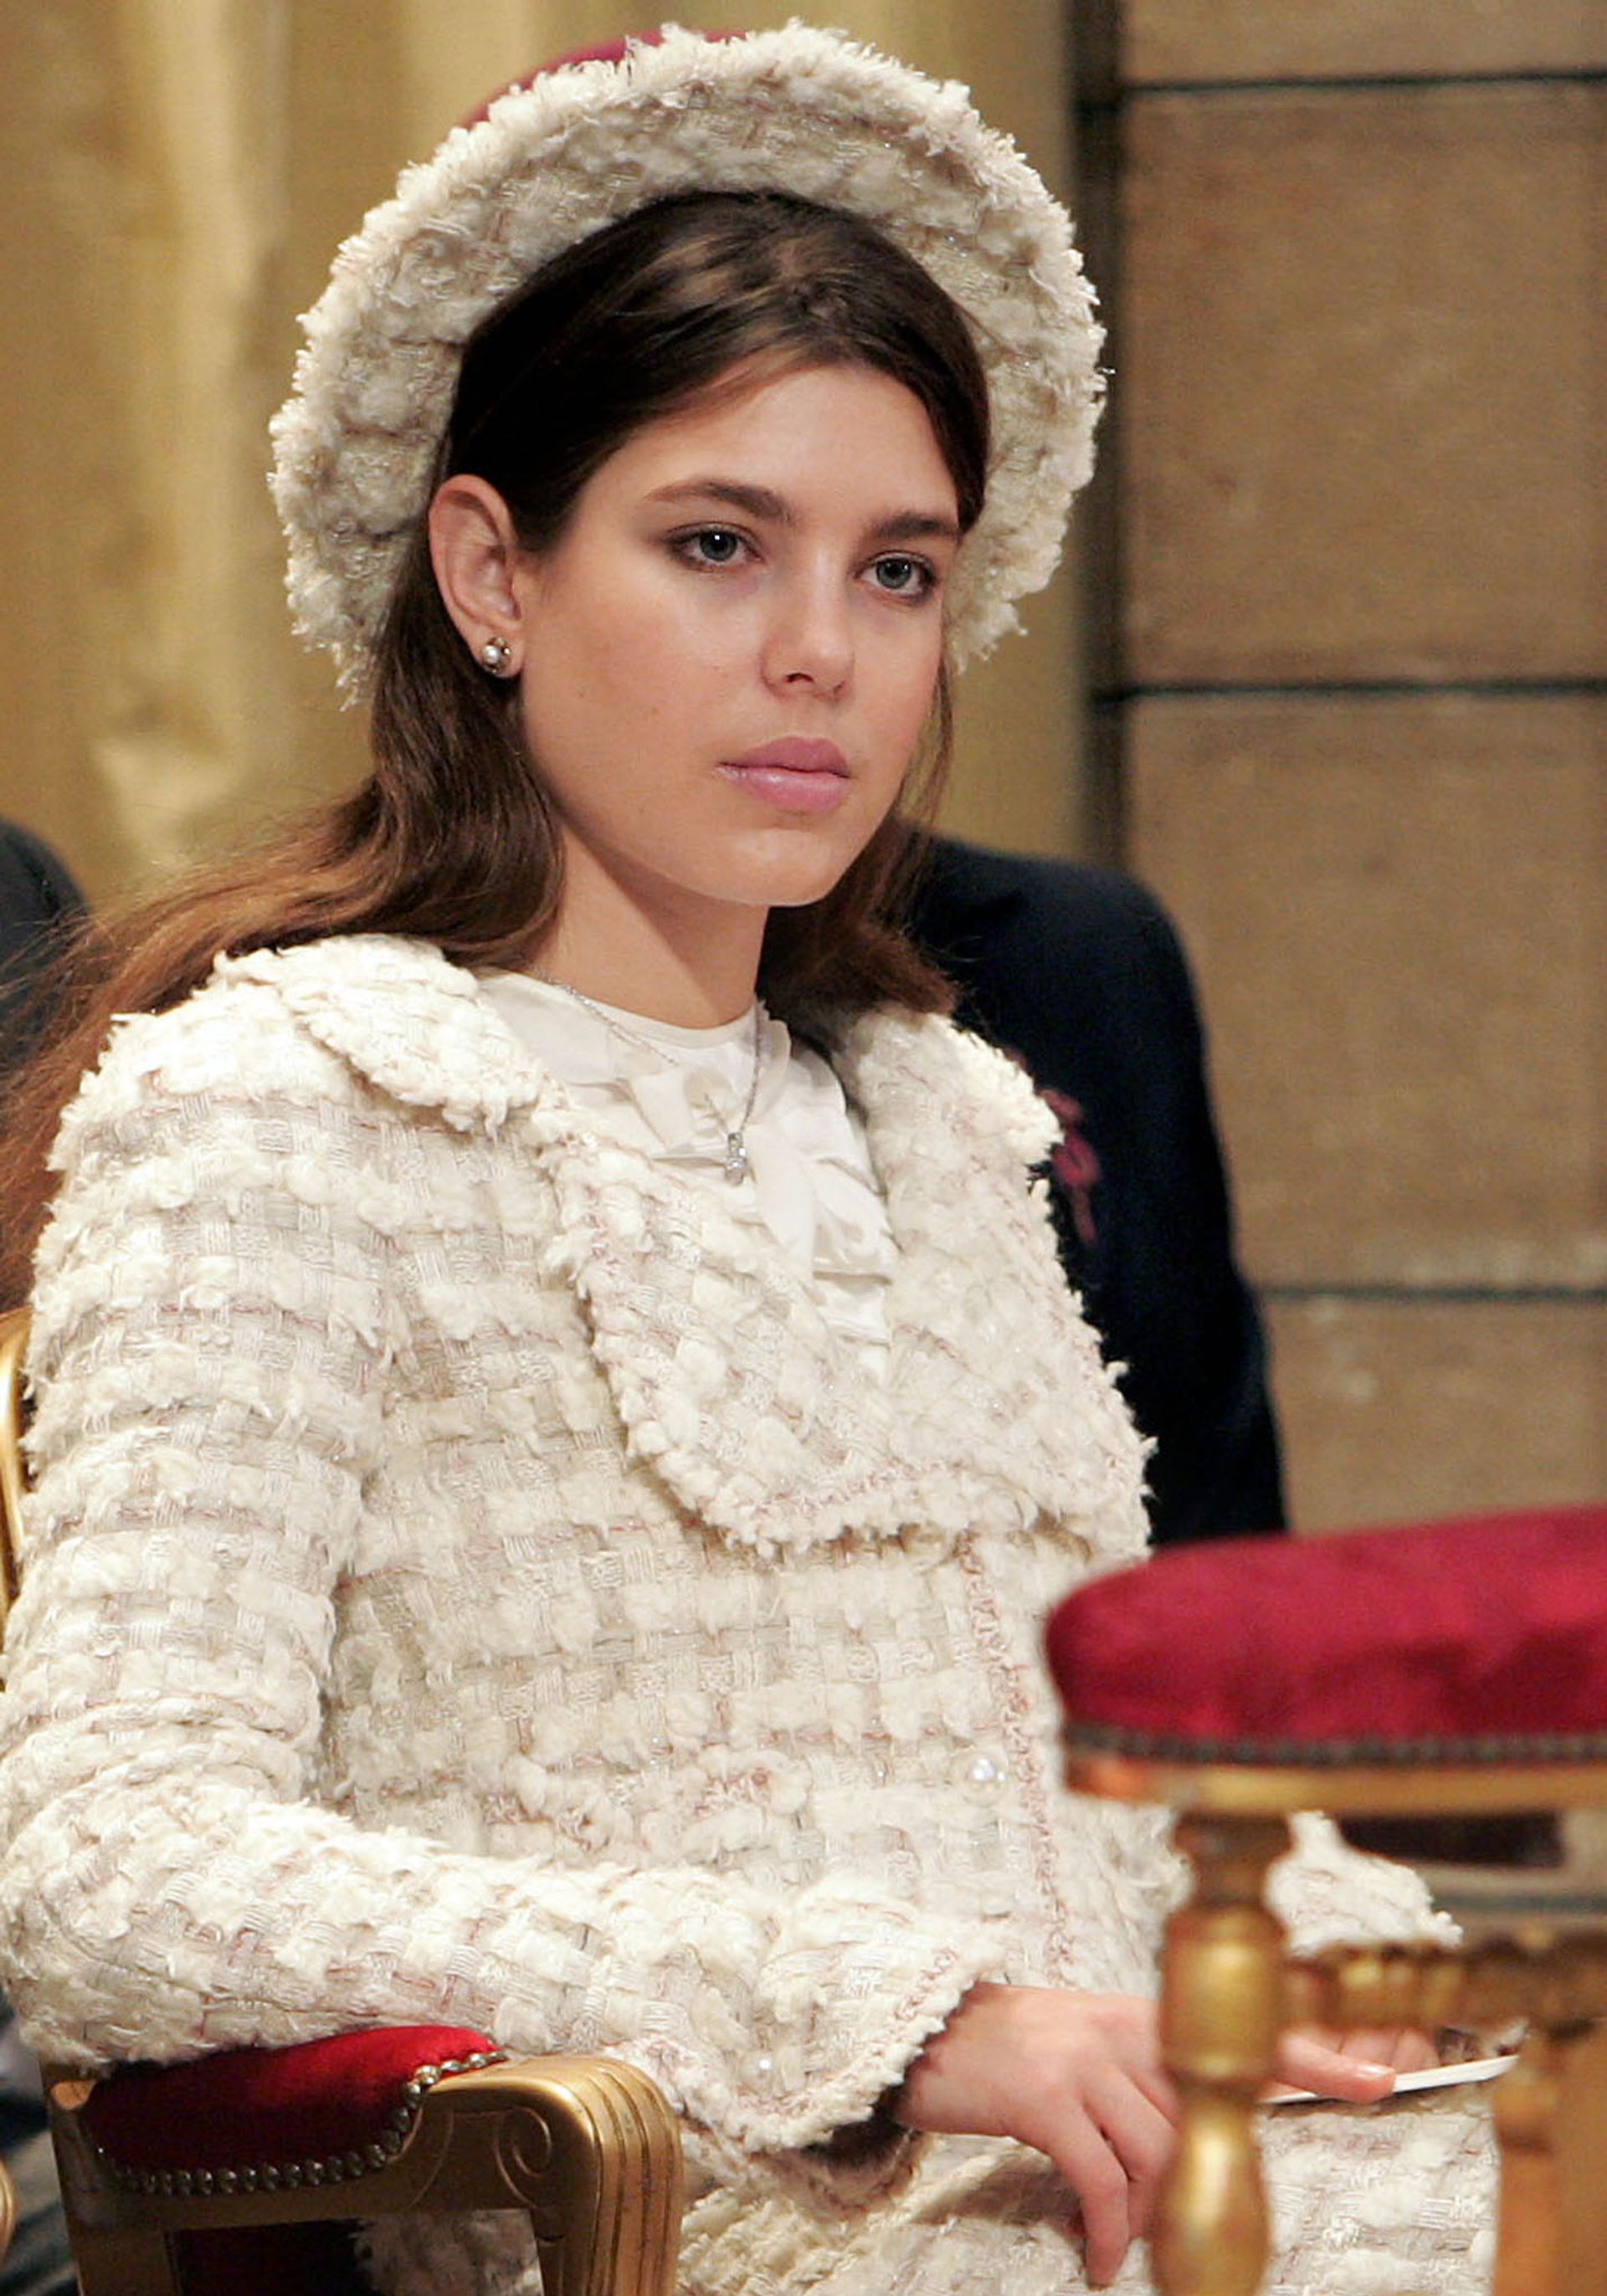 Charlotte, in 2005, bij de investituur van haar oom prins Albert. Ze draagt Chanel.